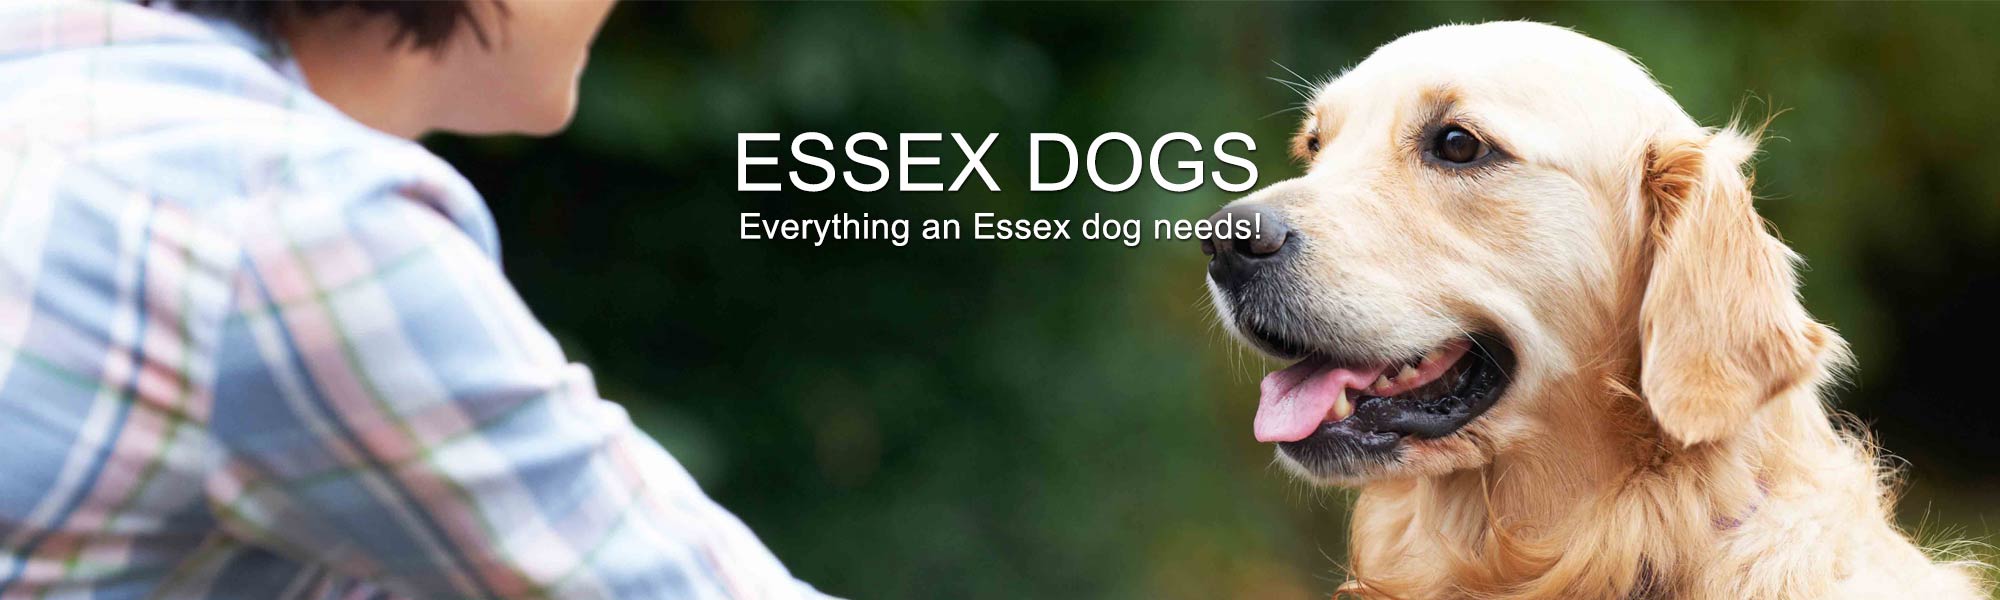 Essex Dogs Header